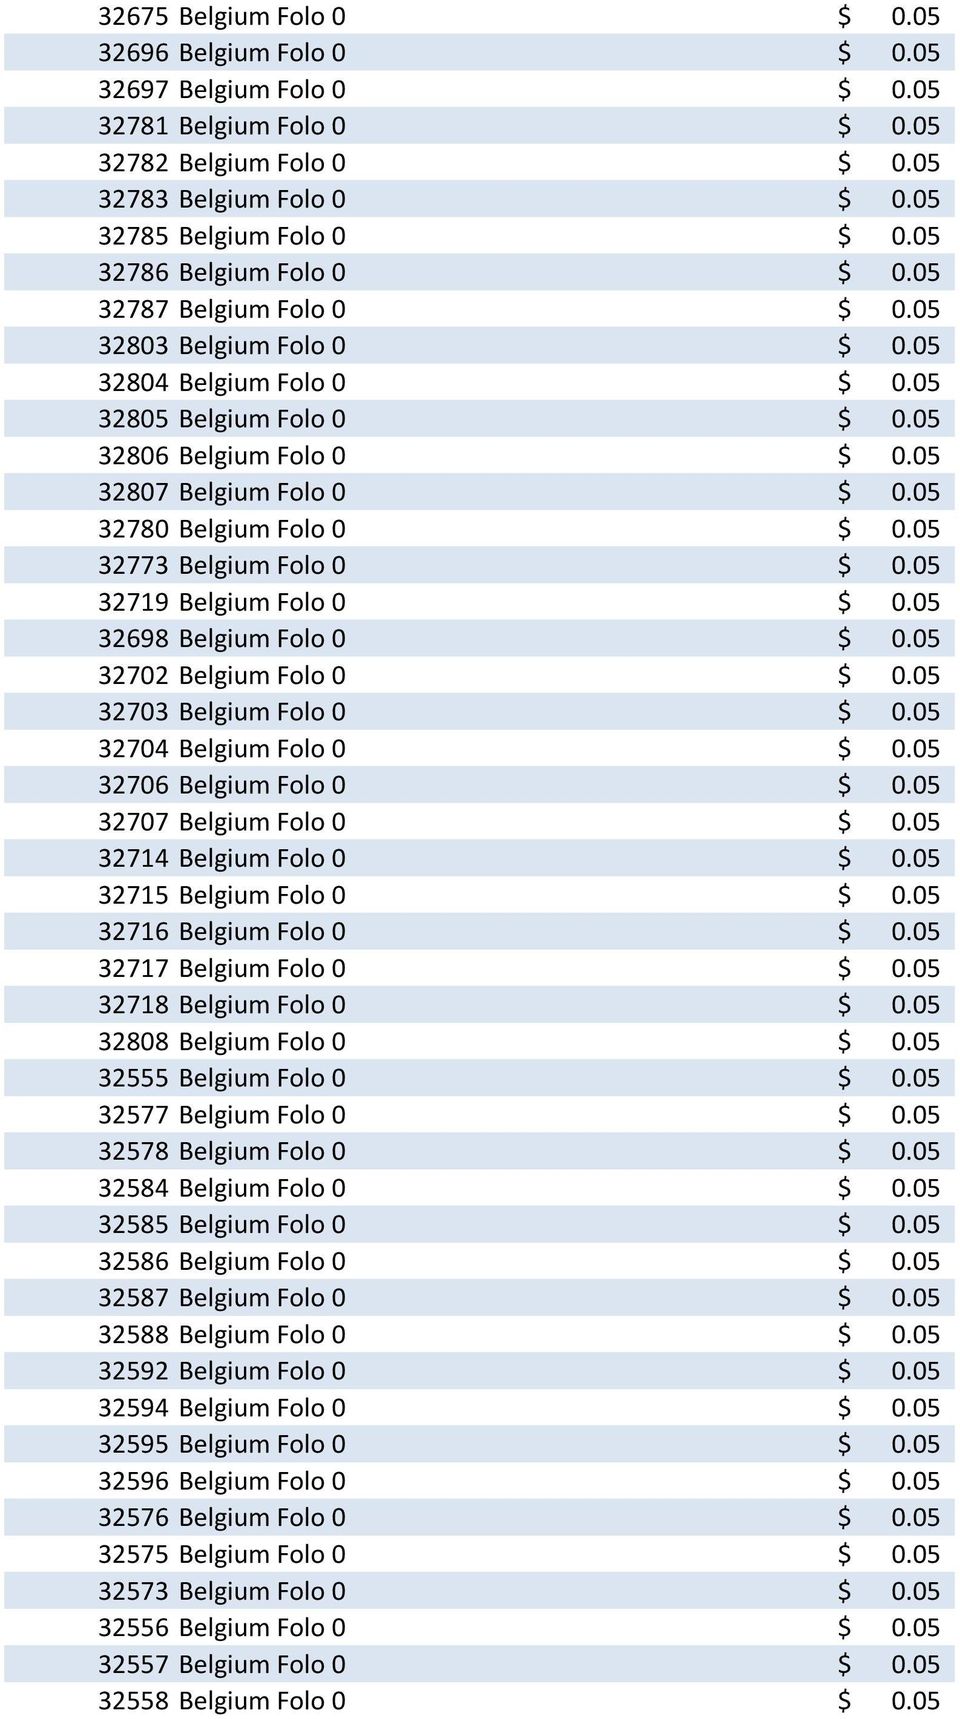 05 32780 Belgium Folo 0 $ 0.05 32773 Belgium Folo 0 $ 0.05 32719 Belgium Folo 0 $ 0.05 32698 Belgium Folo 0 $ 0.05 32702 Belgium Folo 0 $ 0.05 32703 Belgium Folo 0 $ 0.05 32704 Belgium Folo 0 $ 0.